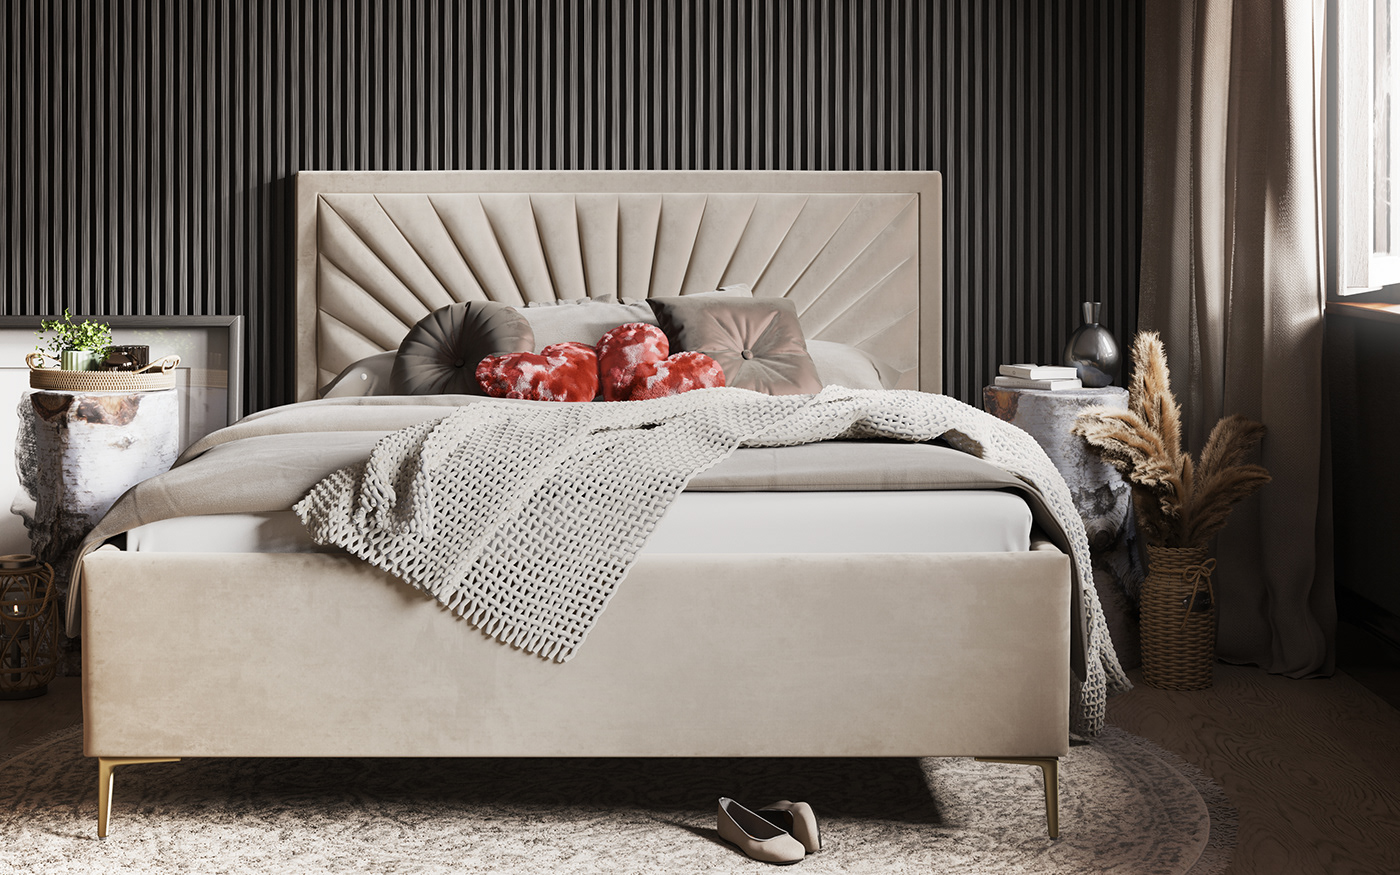 furniture design beds 3d Models 3d modeling rendering blender 3d Interior